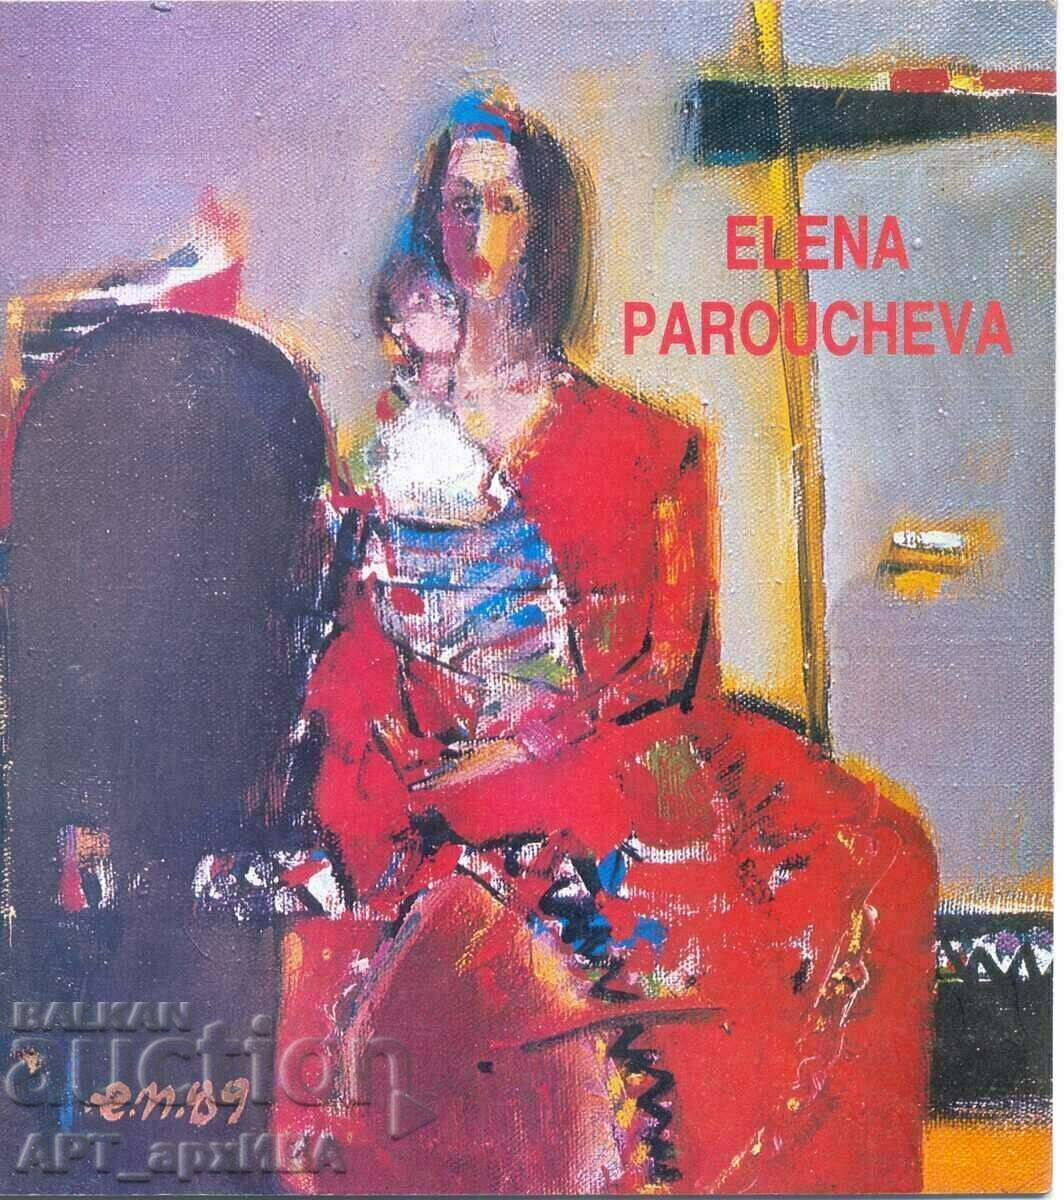 Catalogul unei expoziții de Elena Parusheva, Sofia 1990